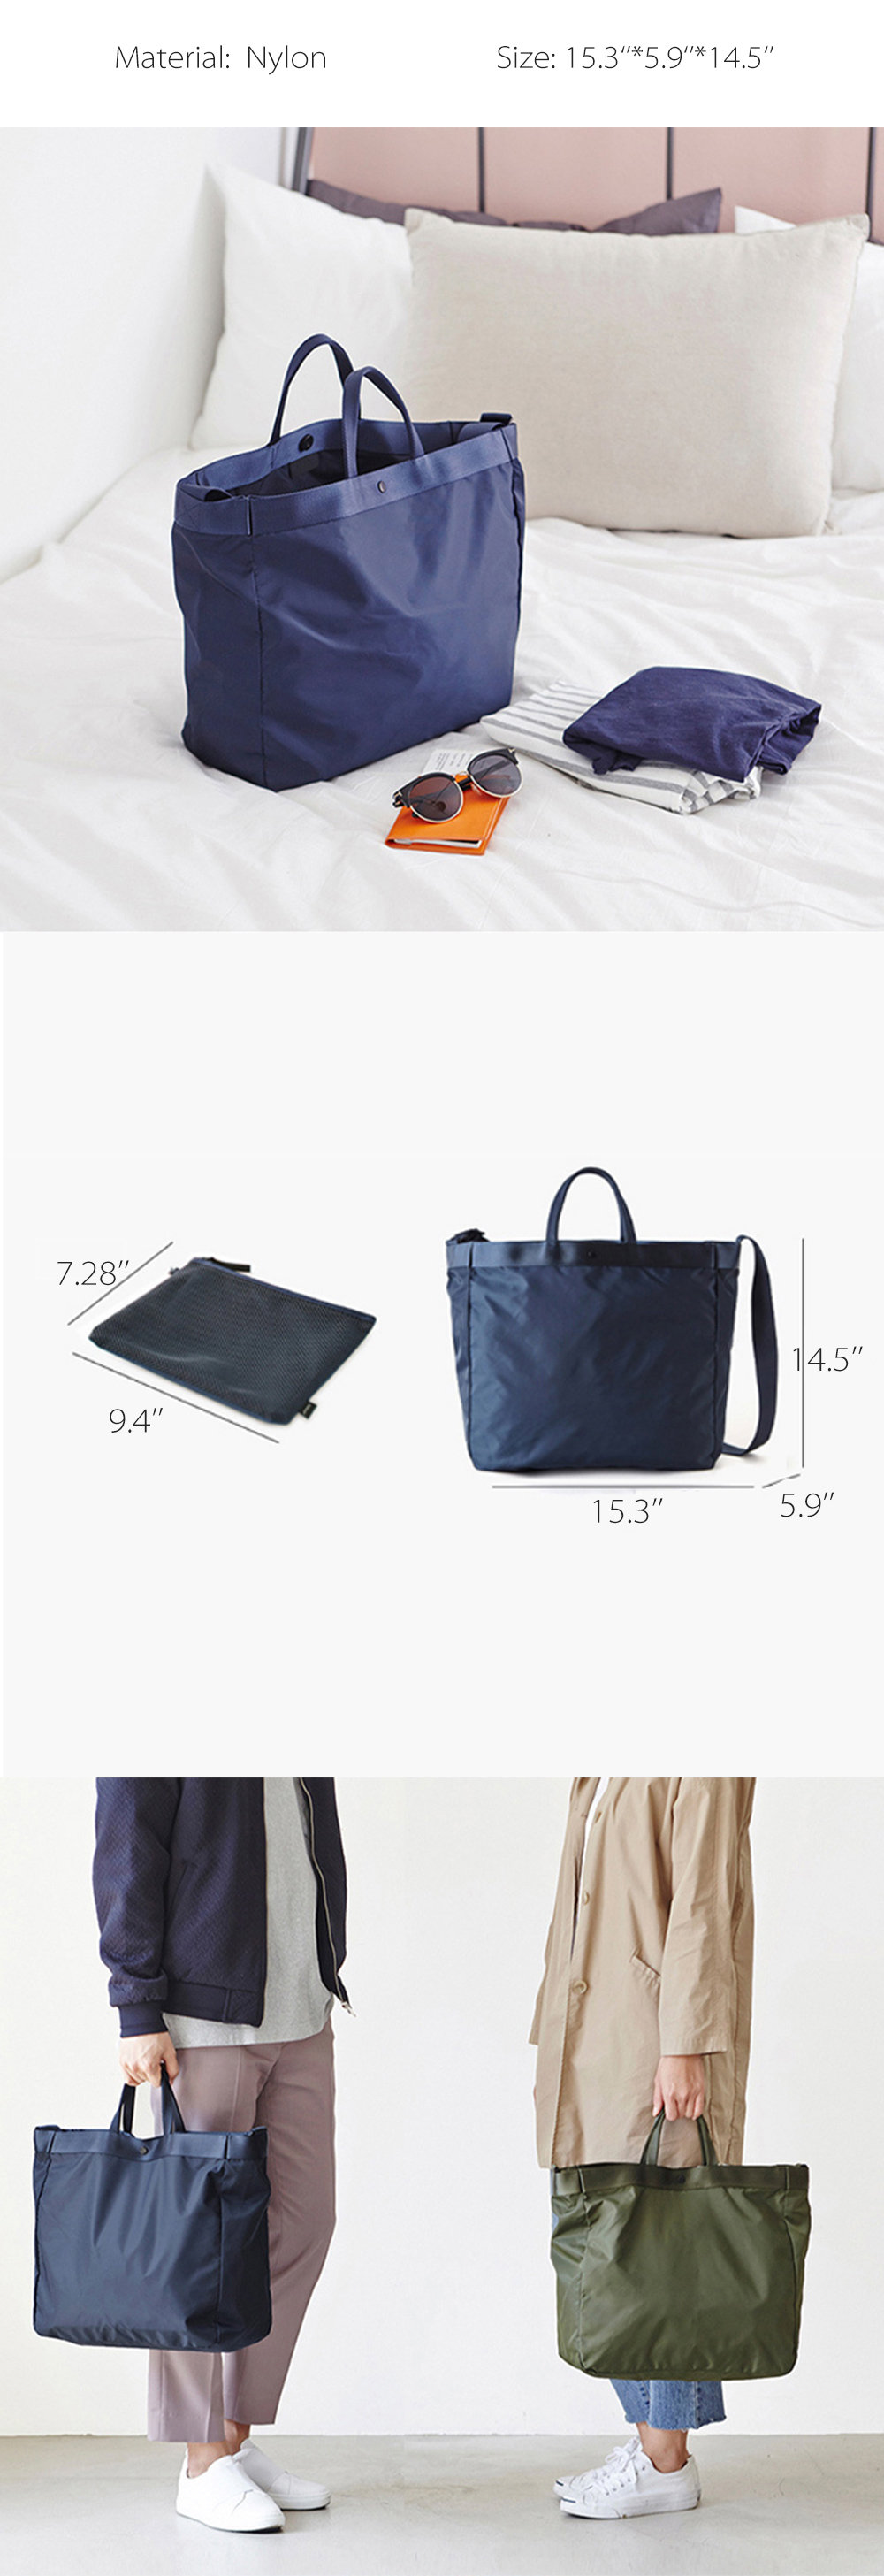 Nylon Travel Bag from Apollo Box